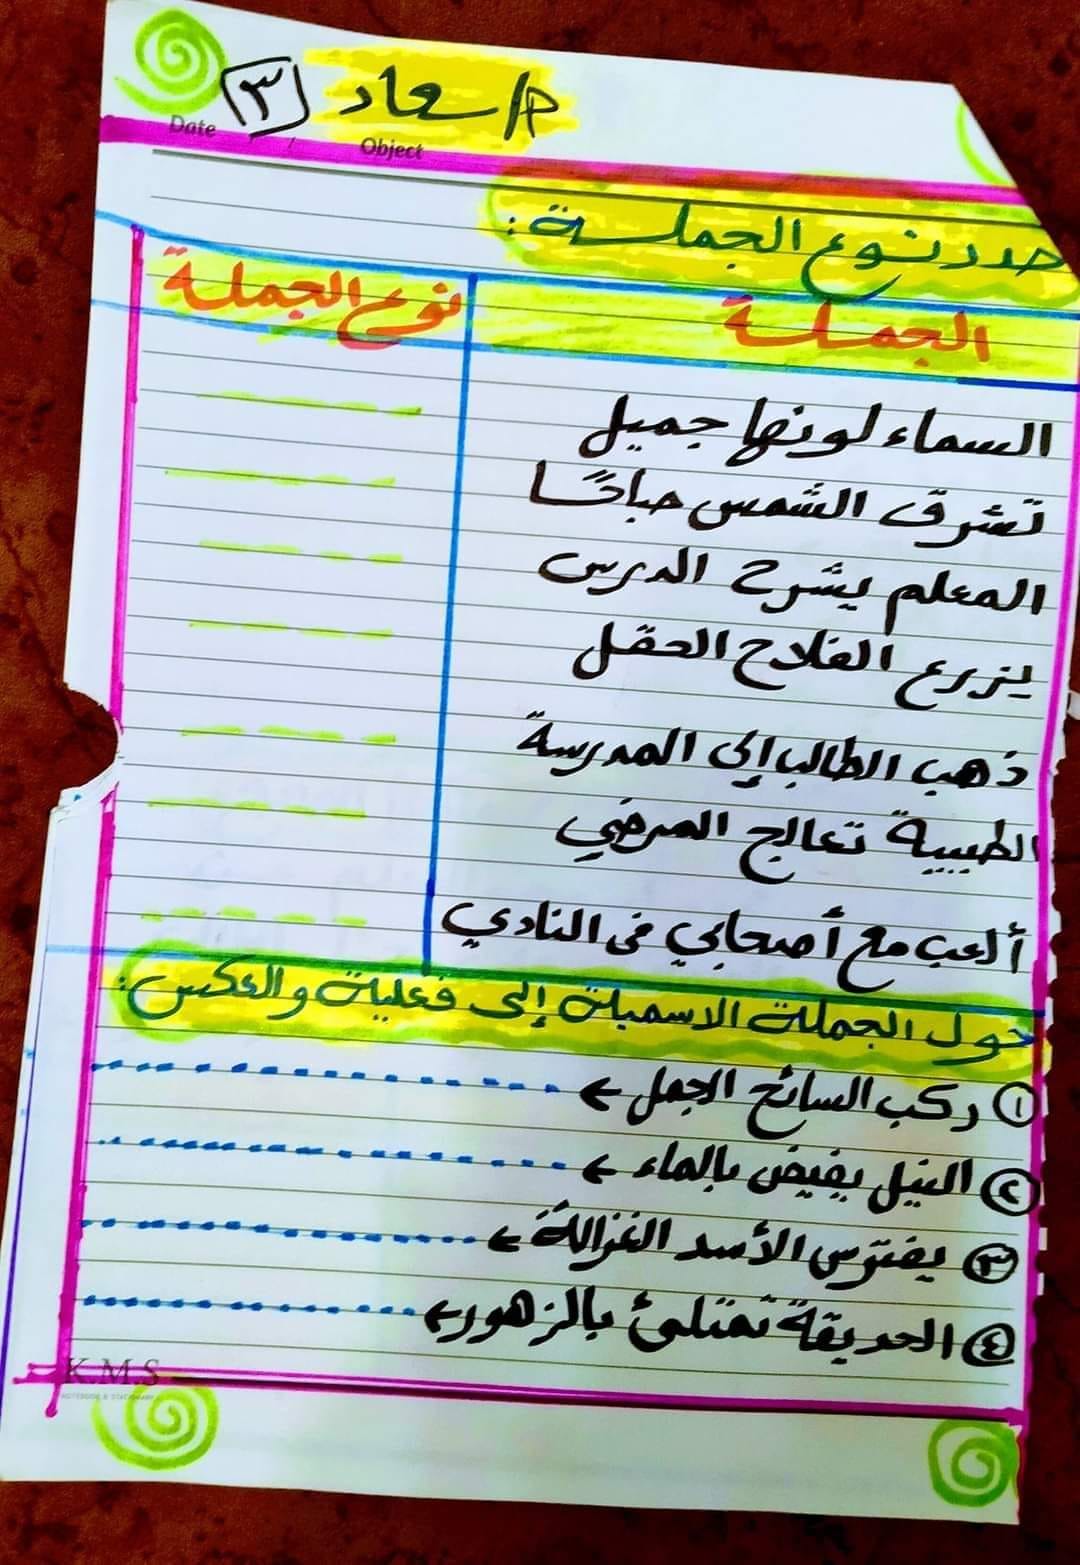 مدرس دوت كوم اختبارات تقييمية لغة عربية للصفوف الأول والثاني والثالث الابتدائي أ/ سعاد	